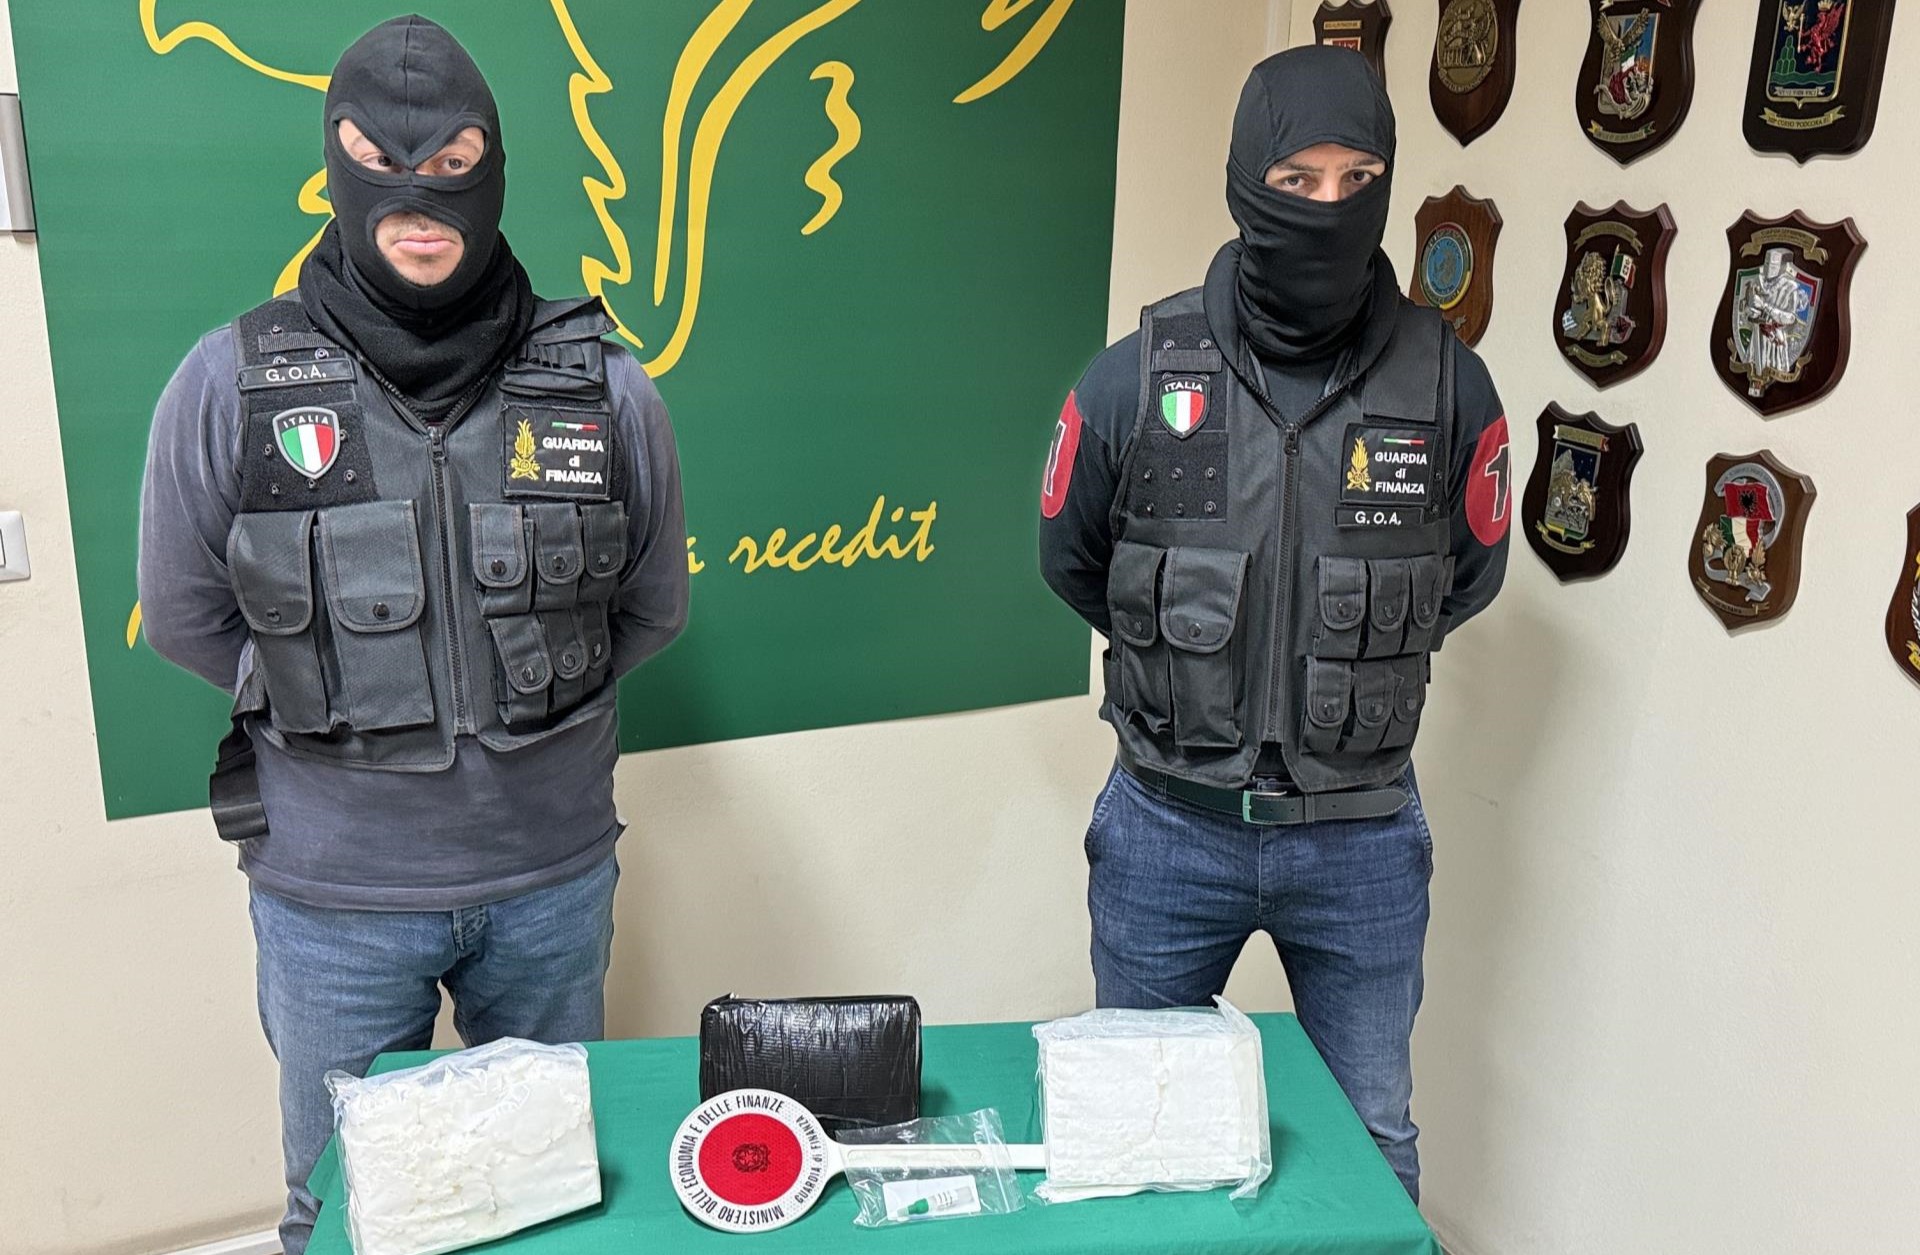 Fermato con quattro chili di cocaina in auto: arrestato corriere a San Gregorio – VIDEO